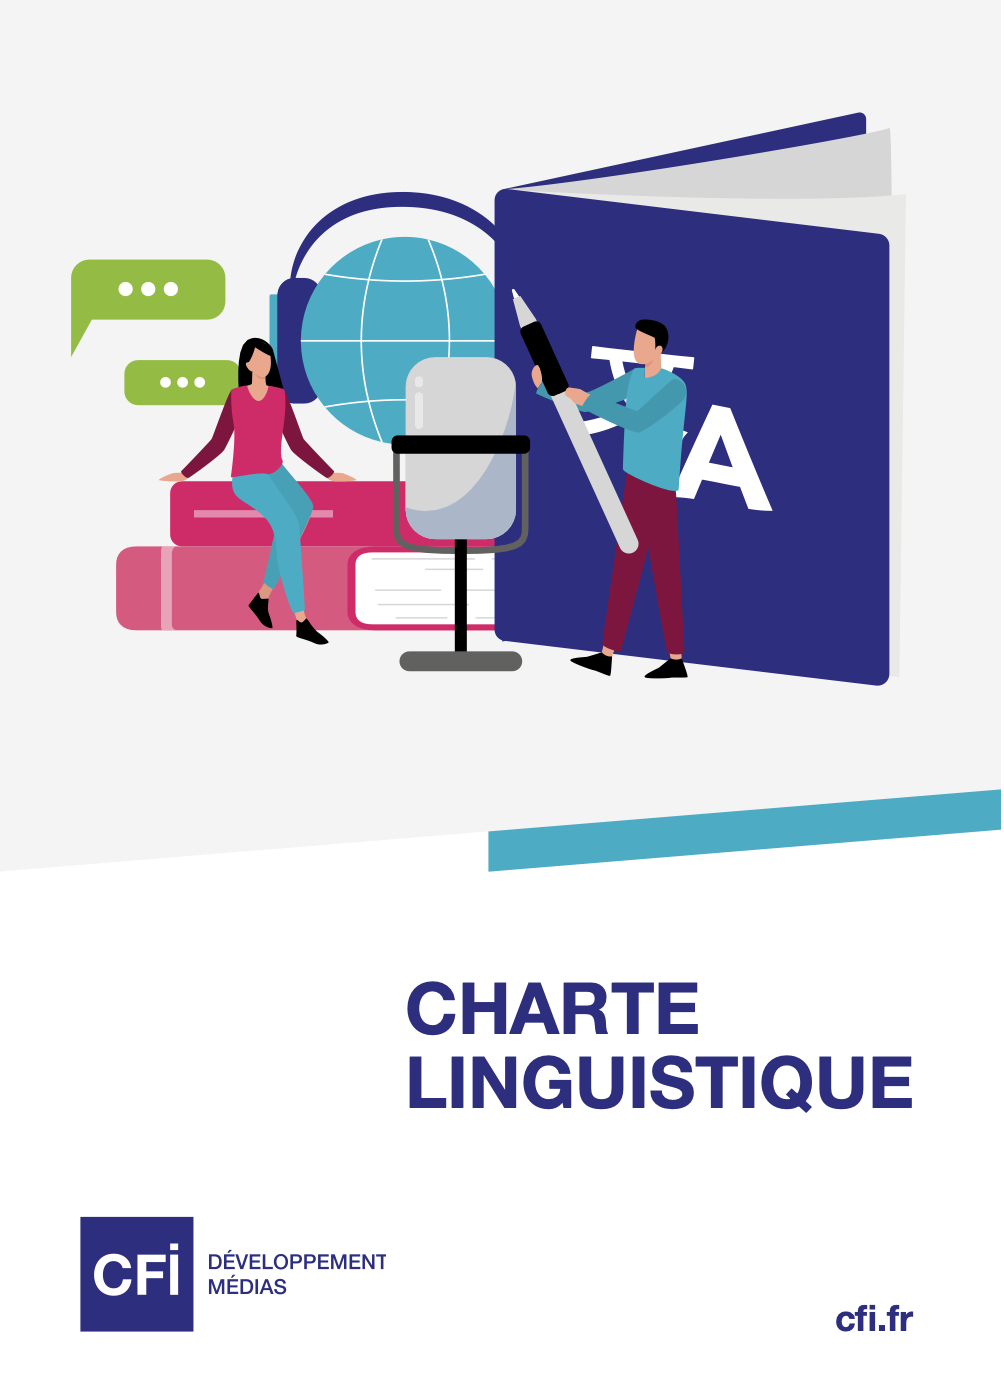 Charte linguistique